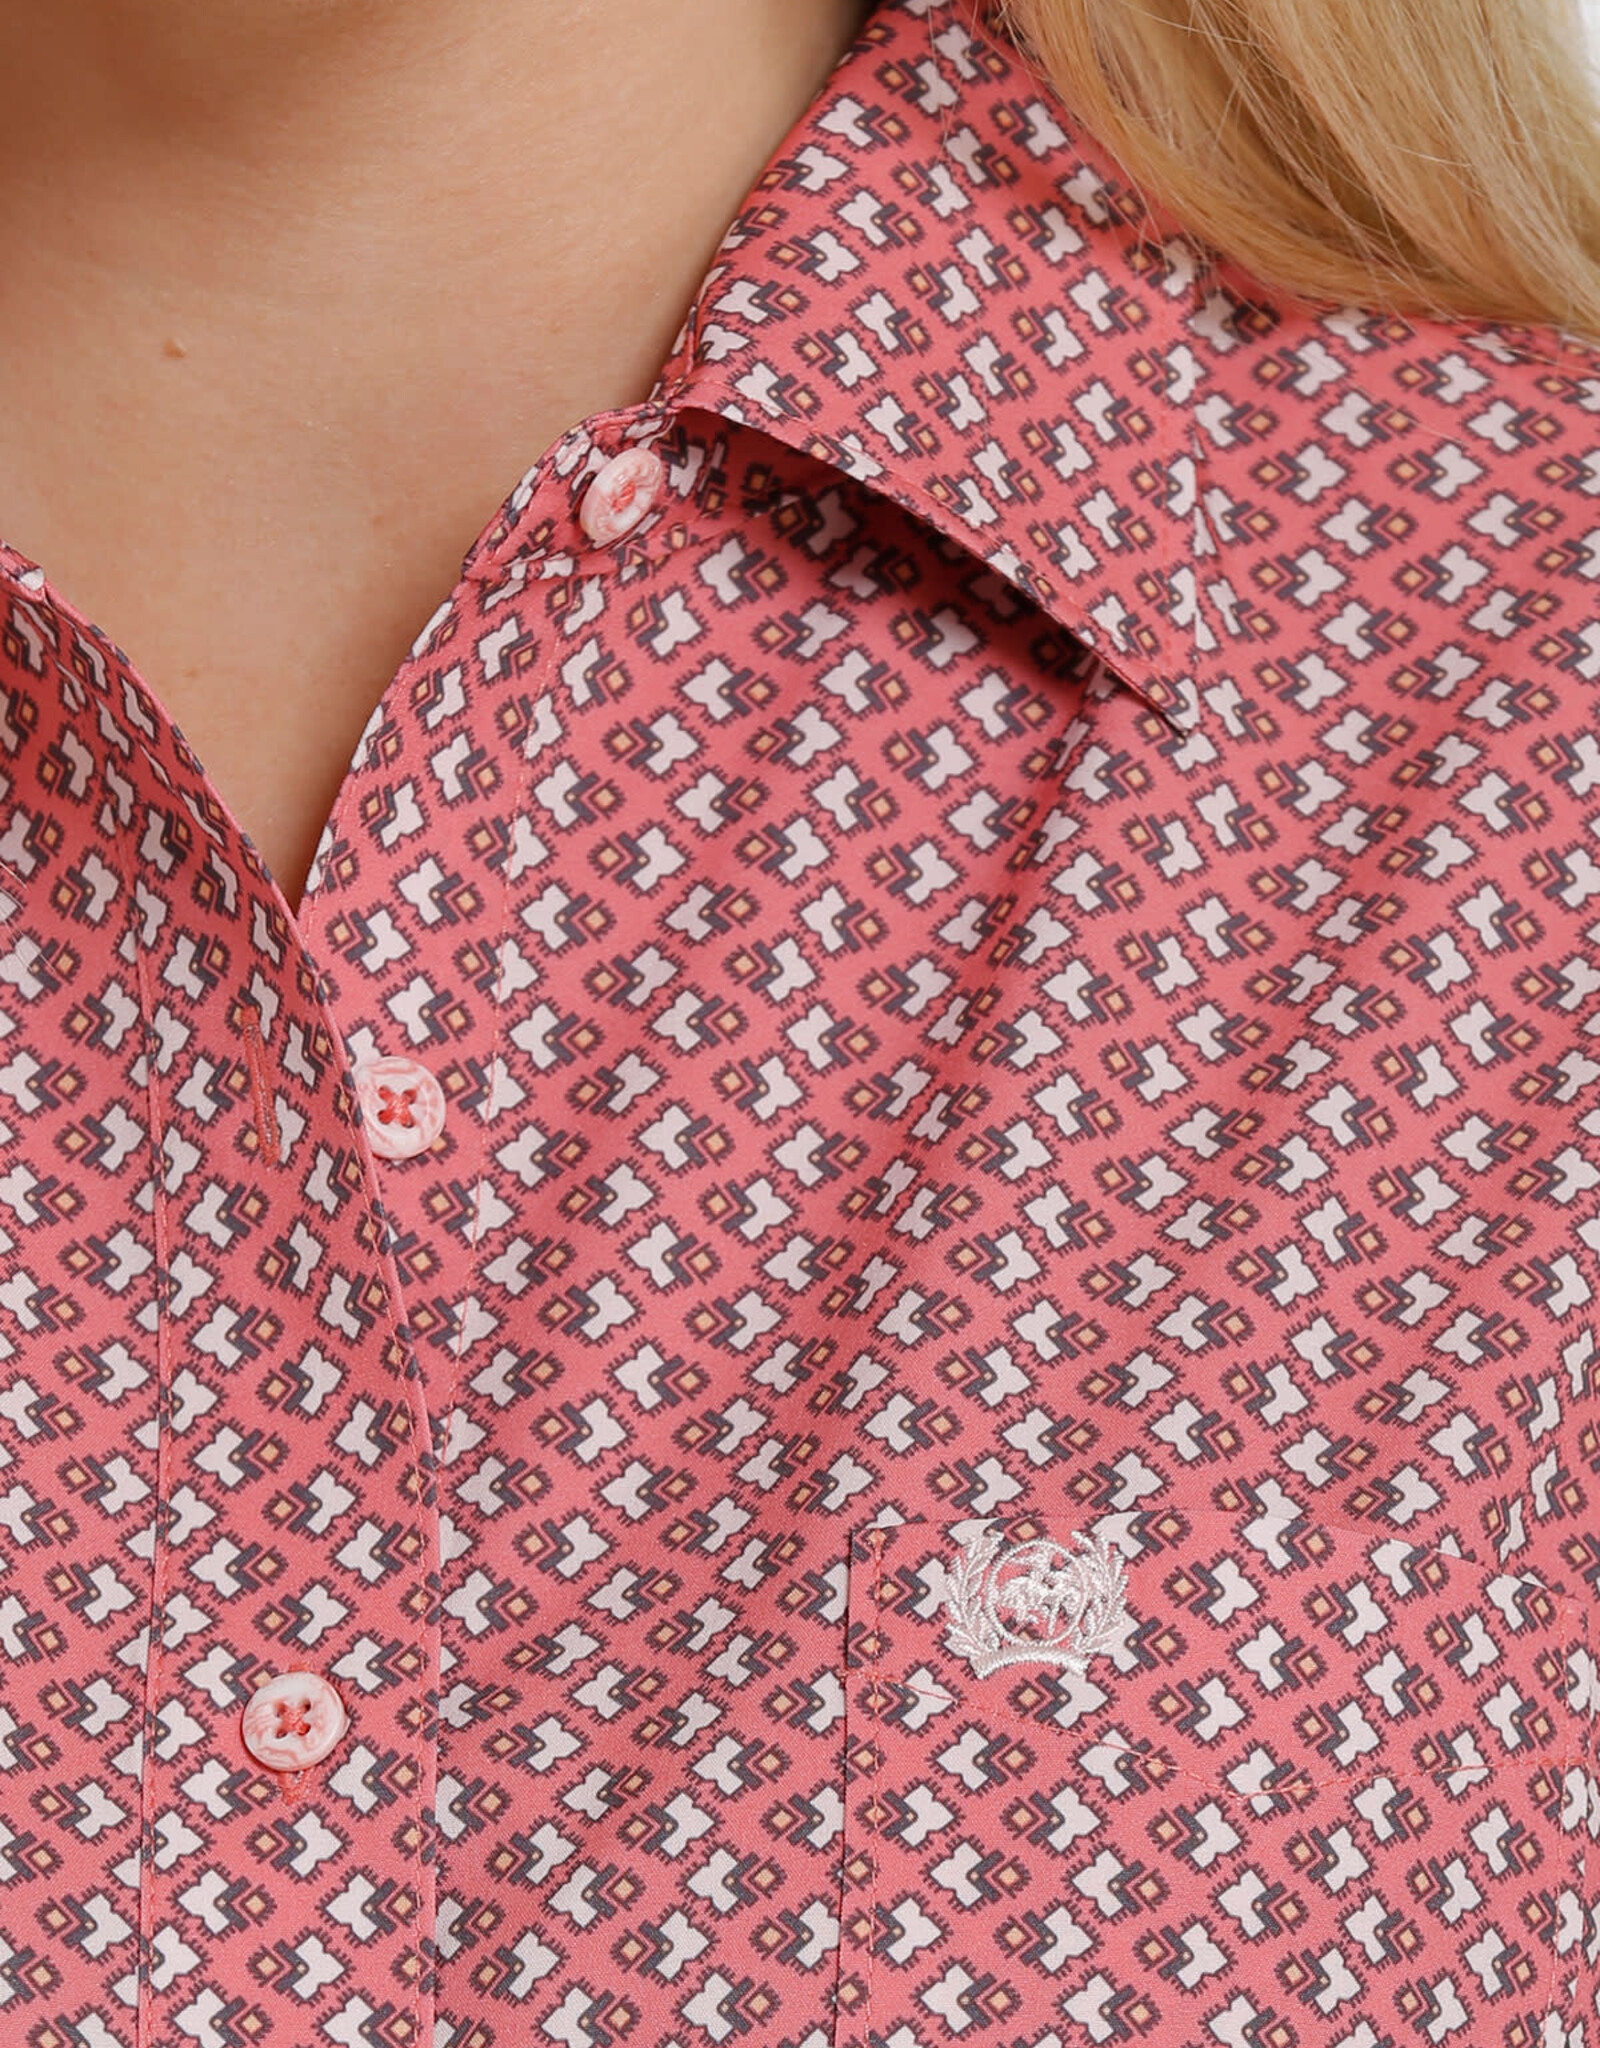 Cinch Womens Cinch Pink  Print Arena Flex Long Sleeve Button Western Shirt